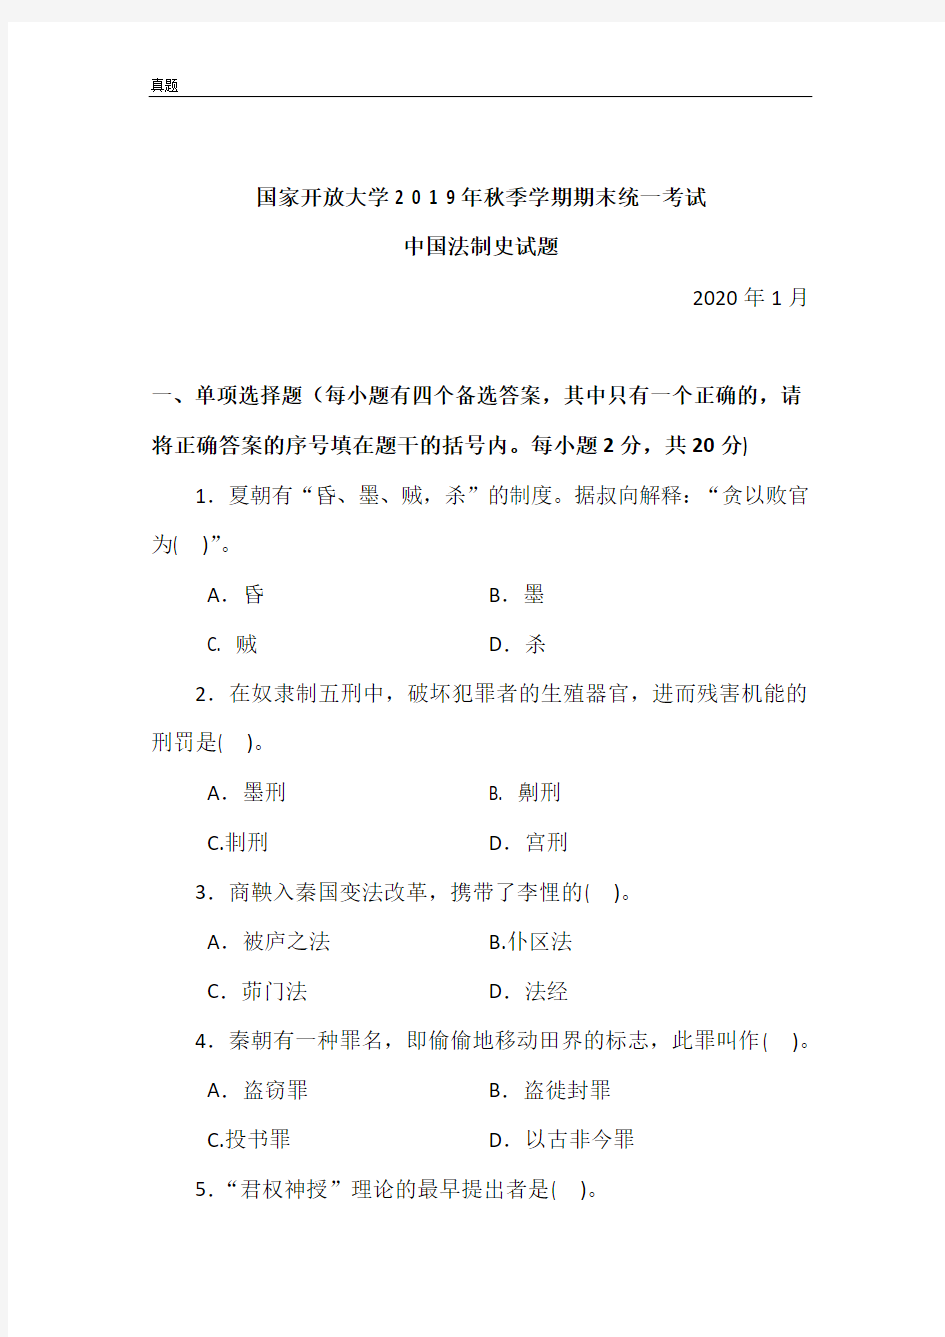 中国法制史-2020.1国家开放大学2 0 1 9年秋季学期期末统一考试试题及答案